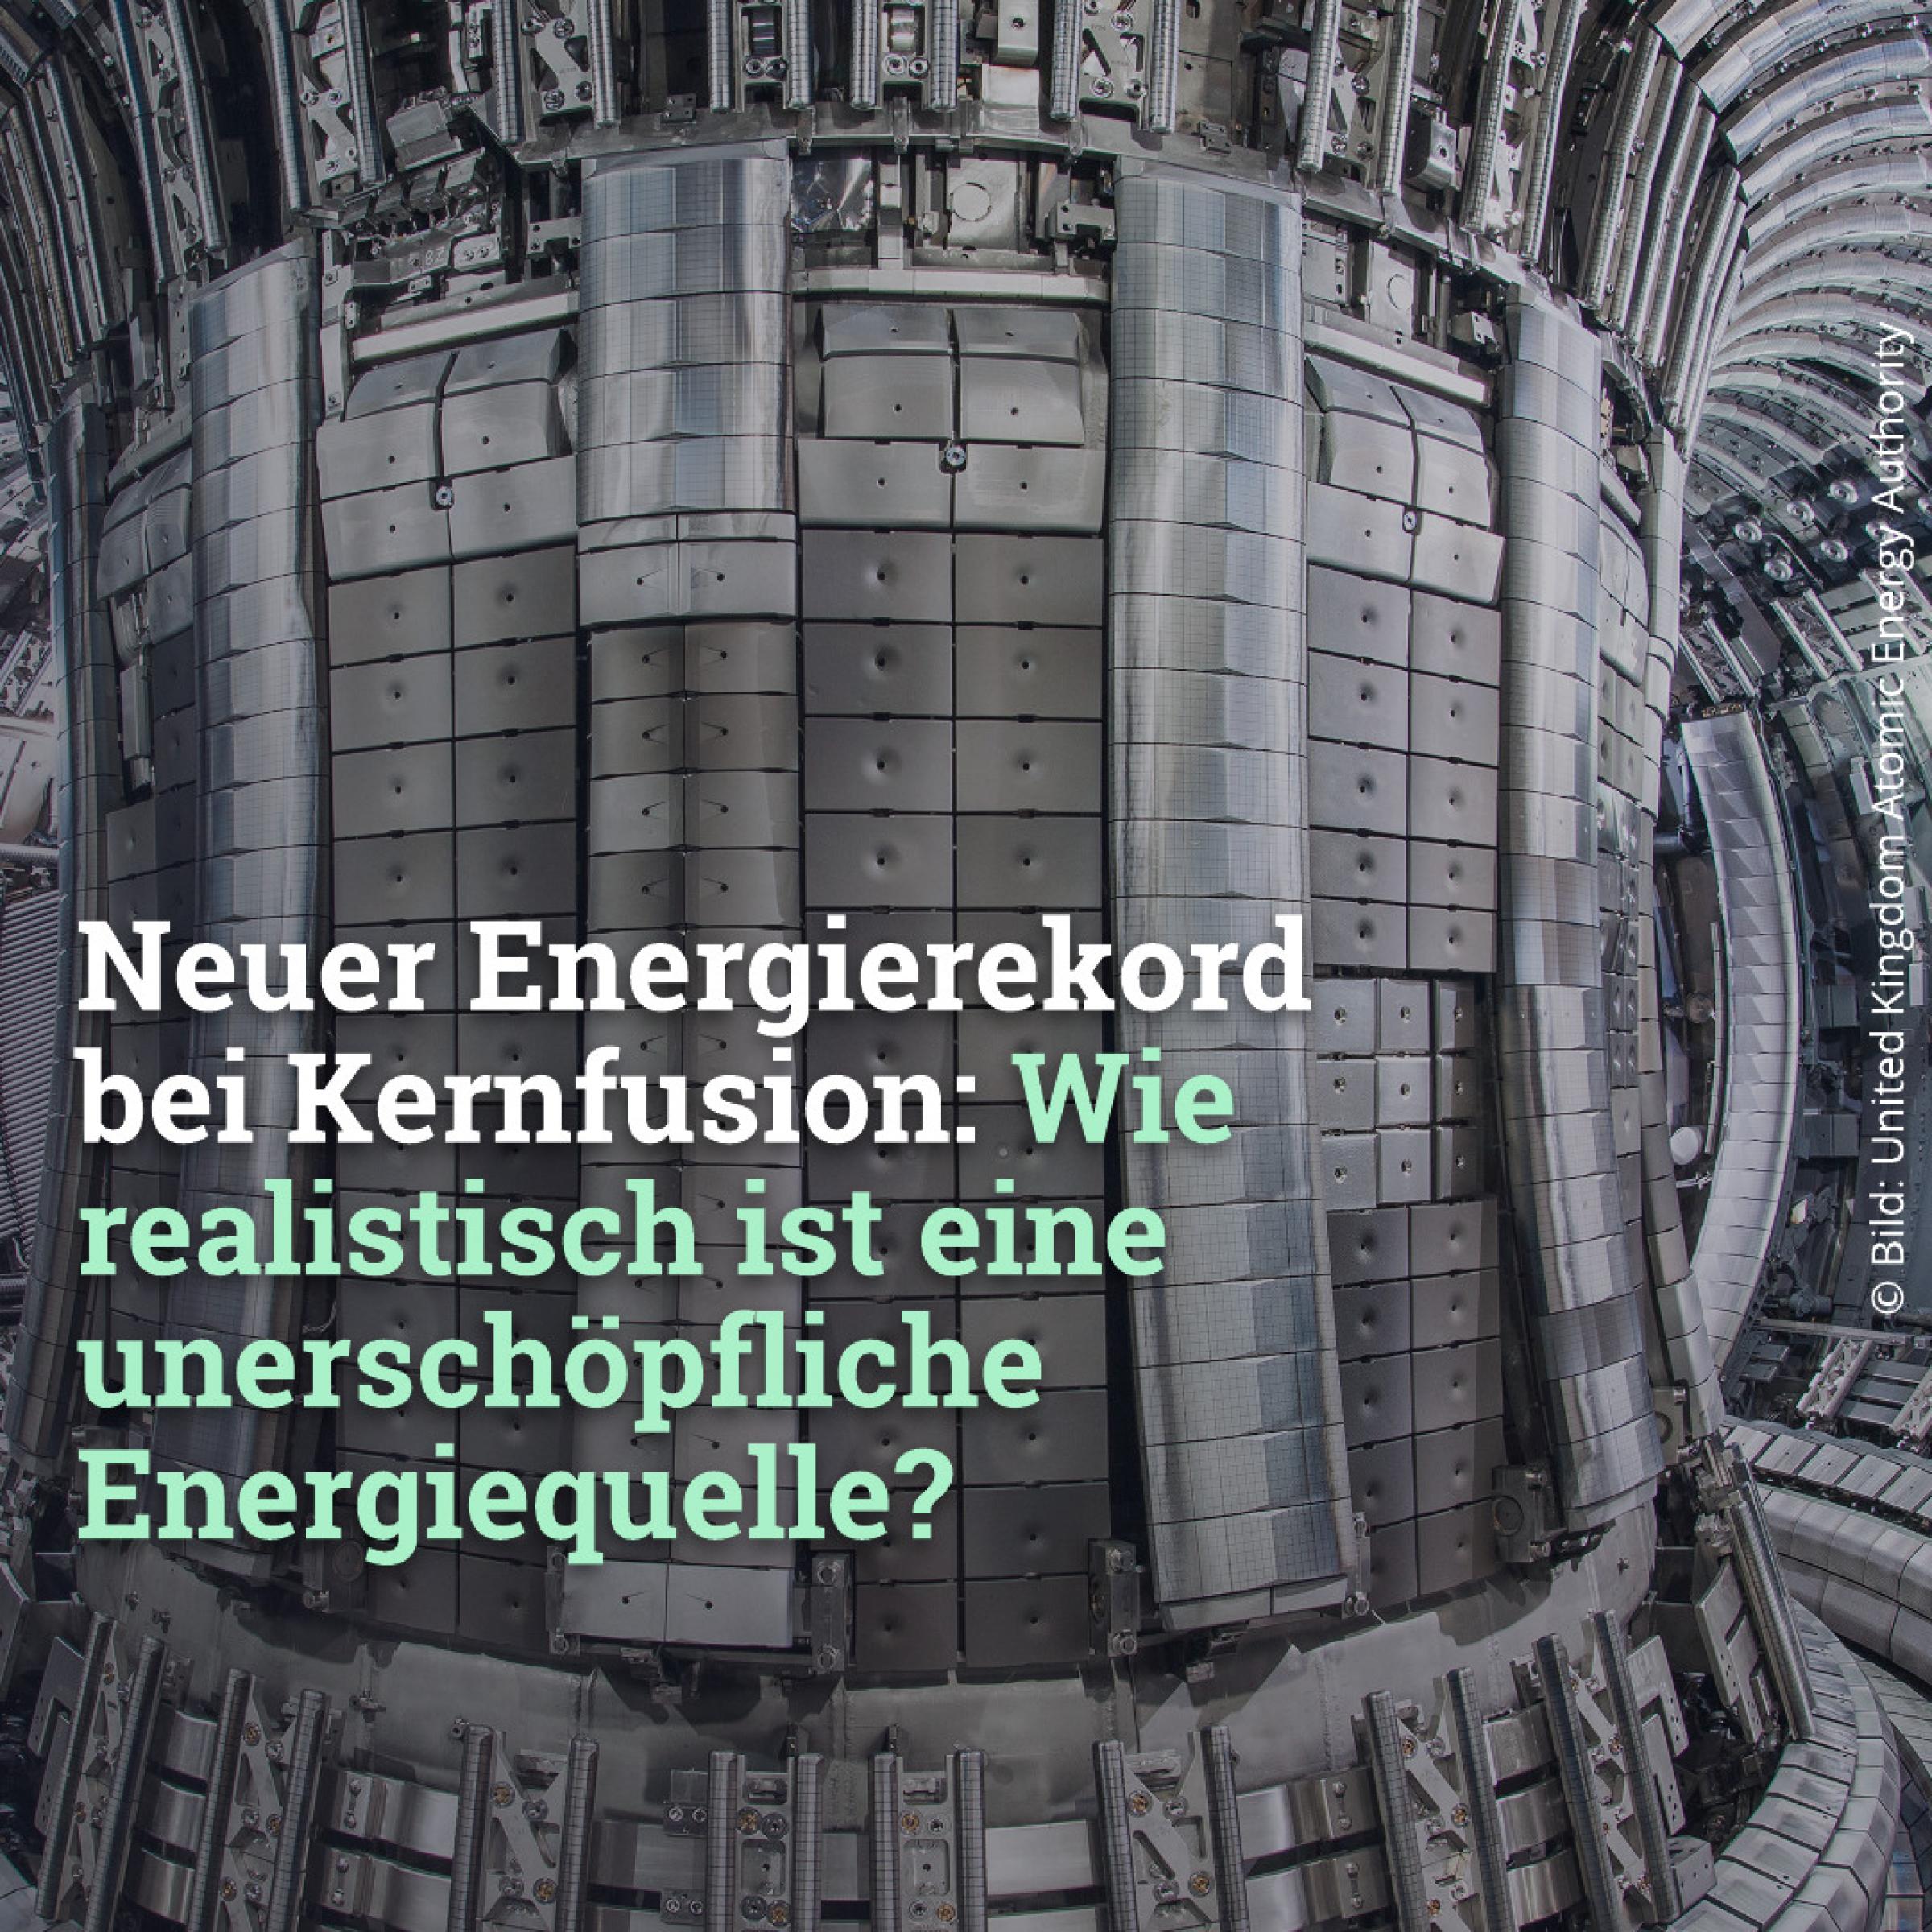 Neuer Energierekord bei Kernfusion: Wie realistisch ist eine unerschöpfliche Energiequelle?